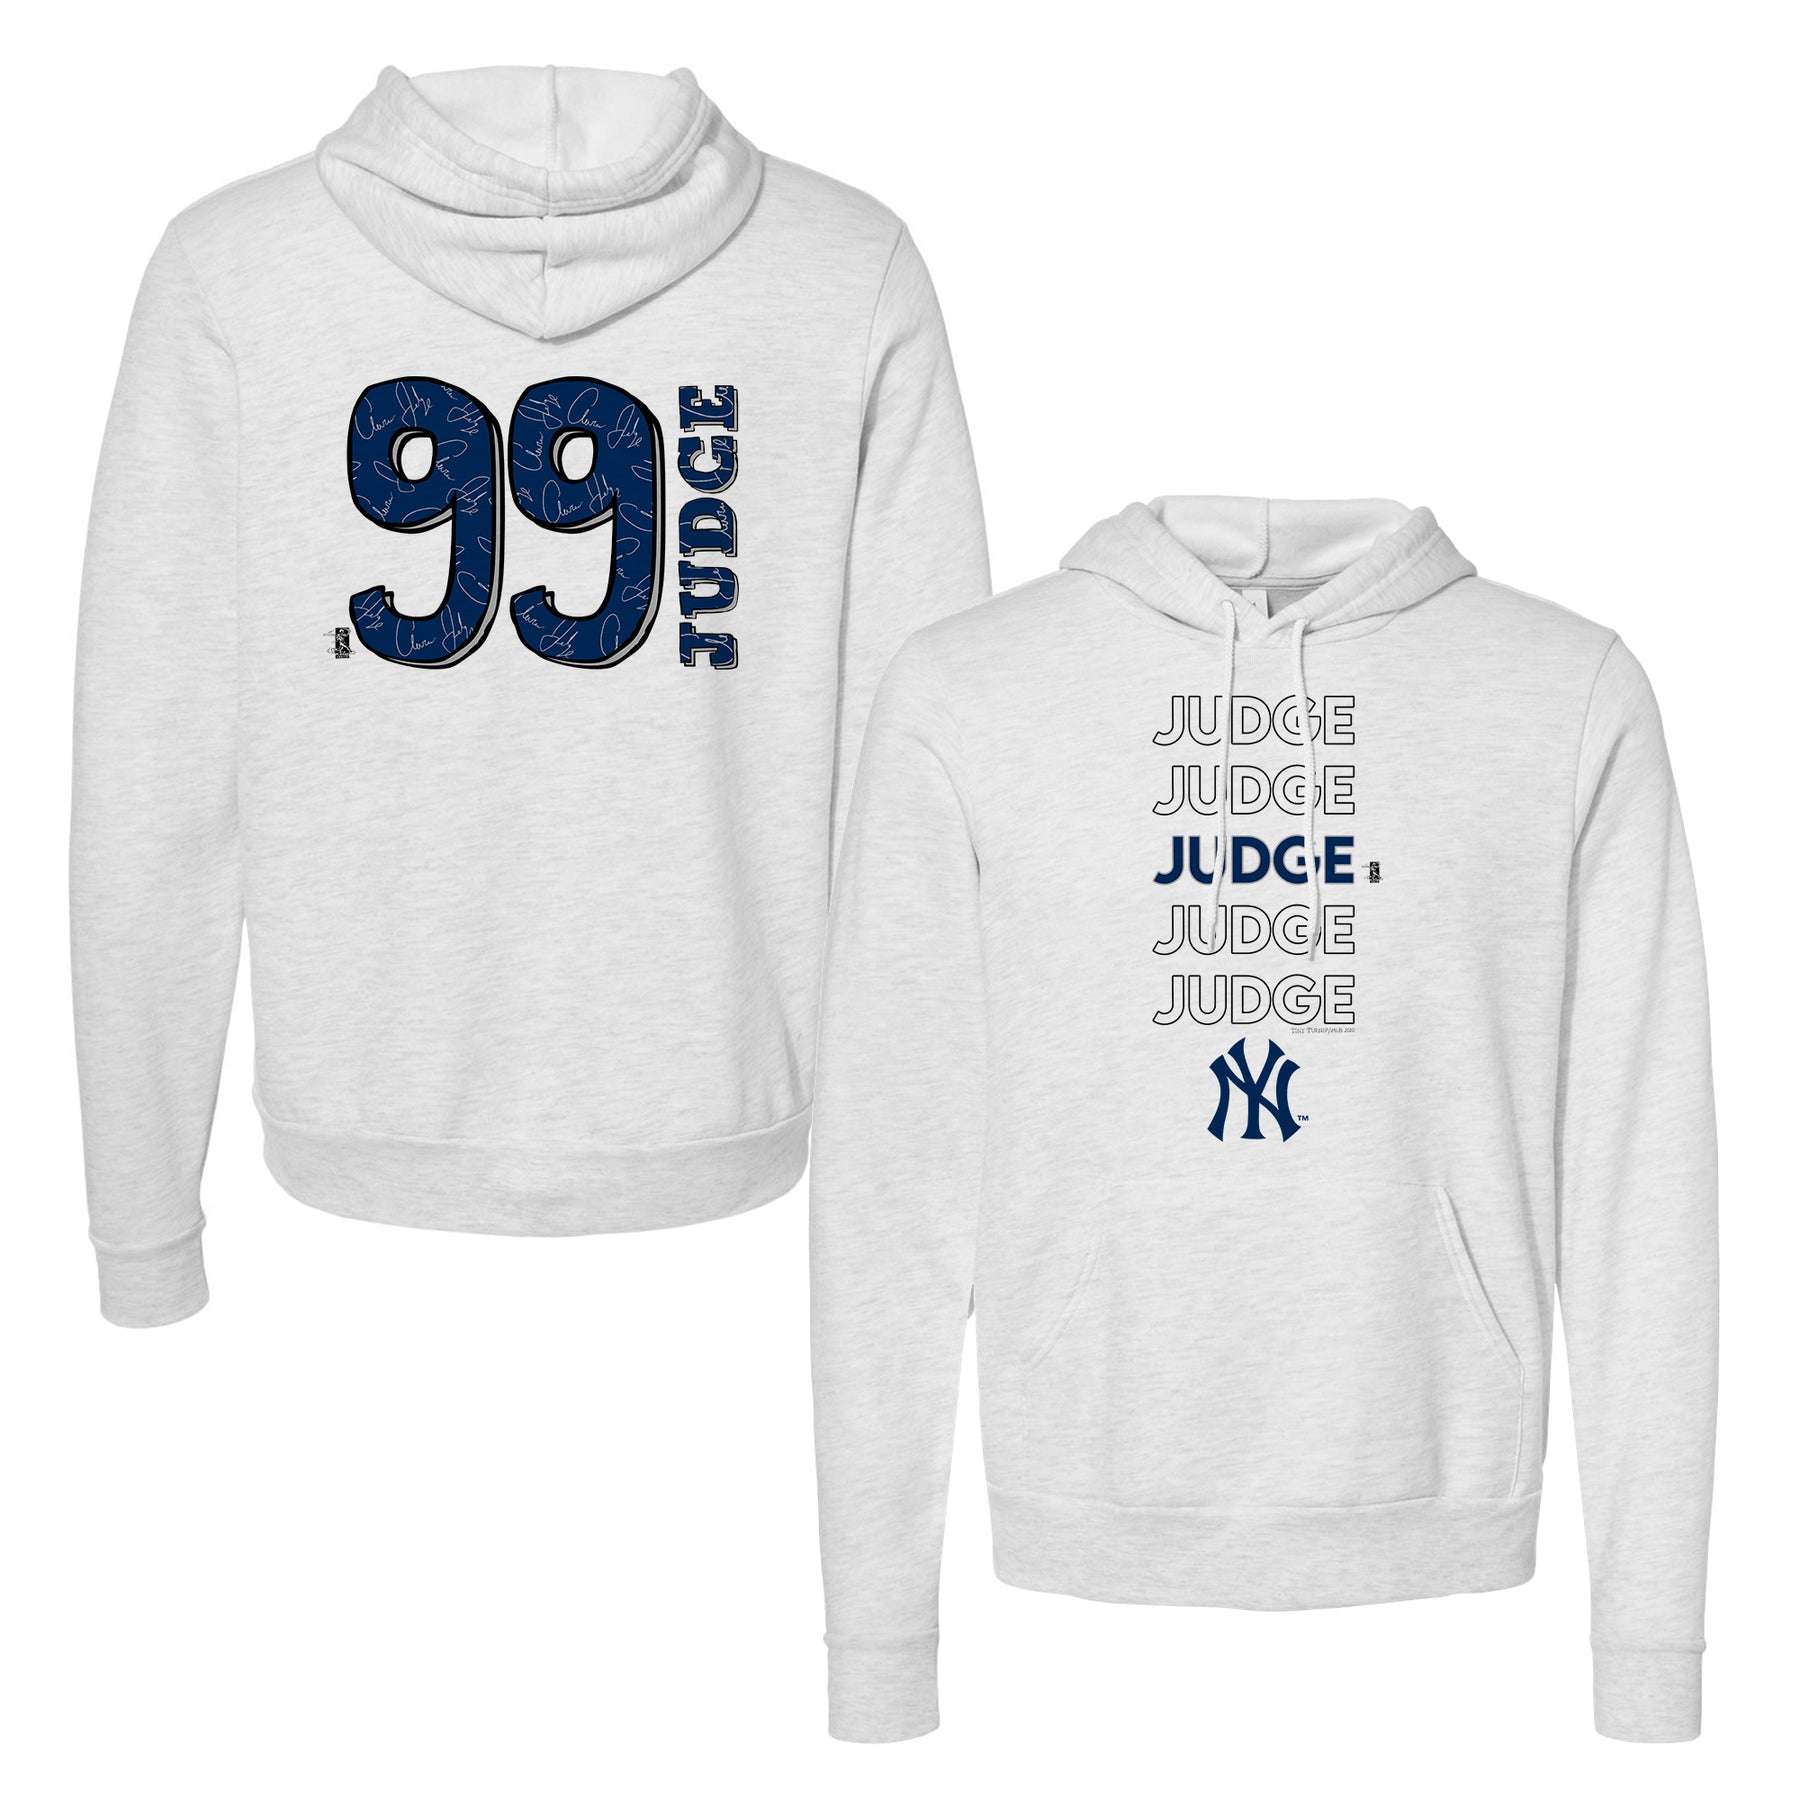 Aaron Judge Jersey  New York Yankees Aaron Judge Jerseys & Apparel -  Yankees Store